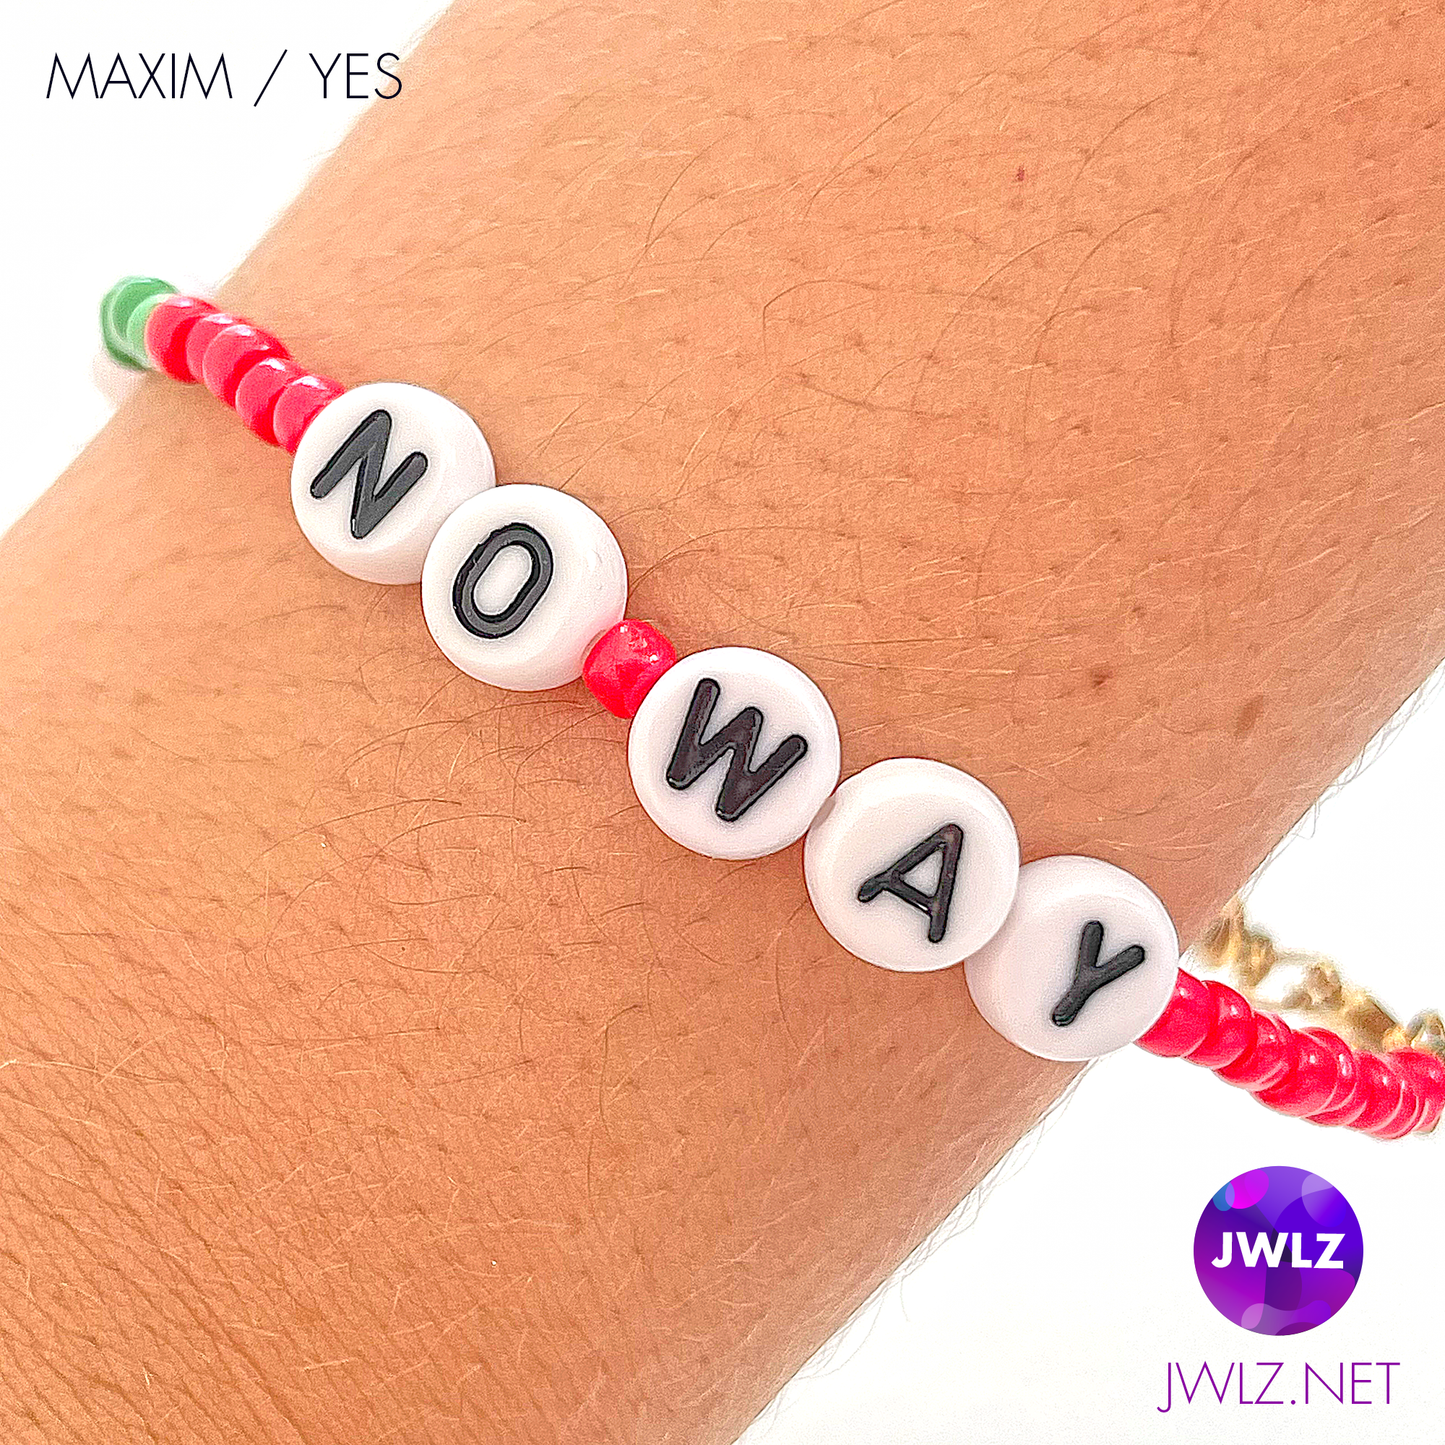 Maxim Yes Way - No Way